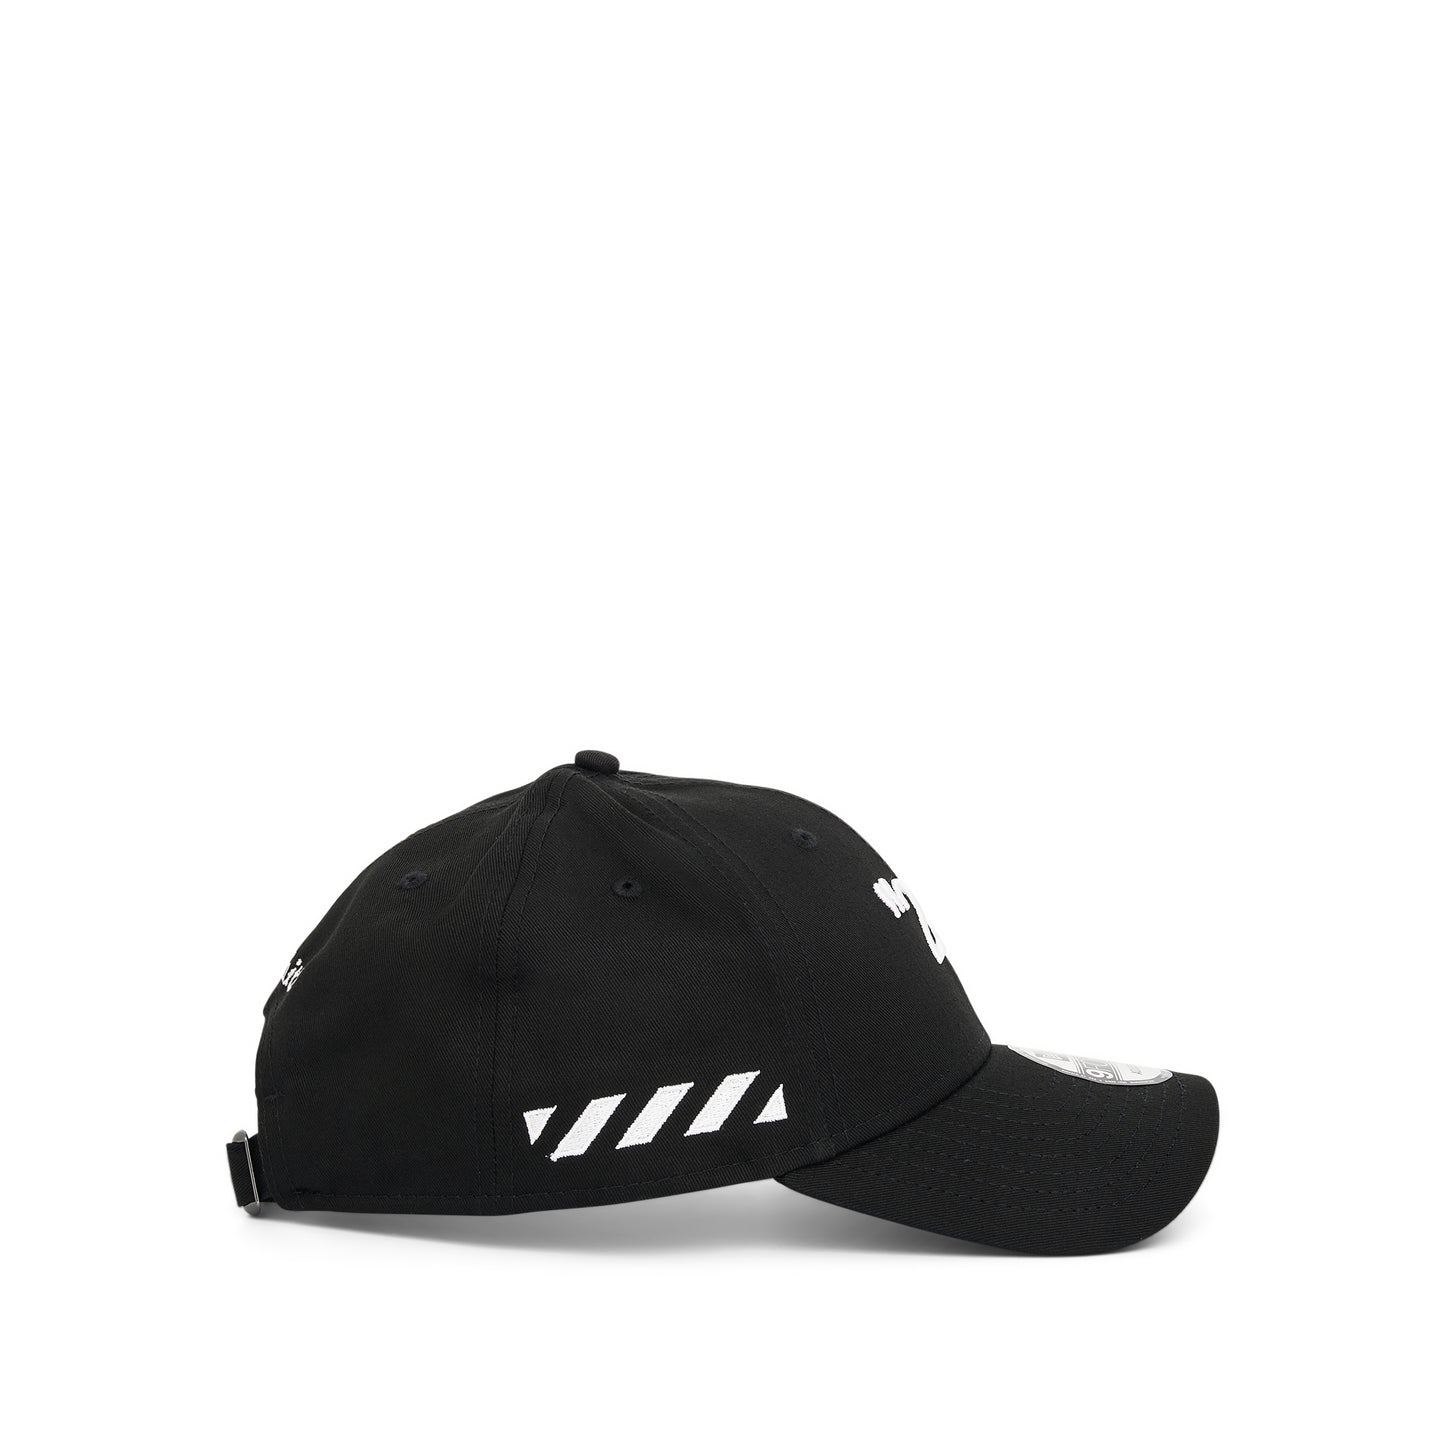 Kit Capsule Cap in Black White